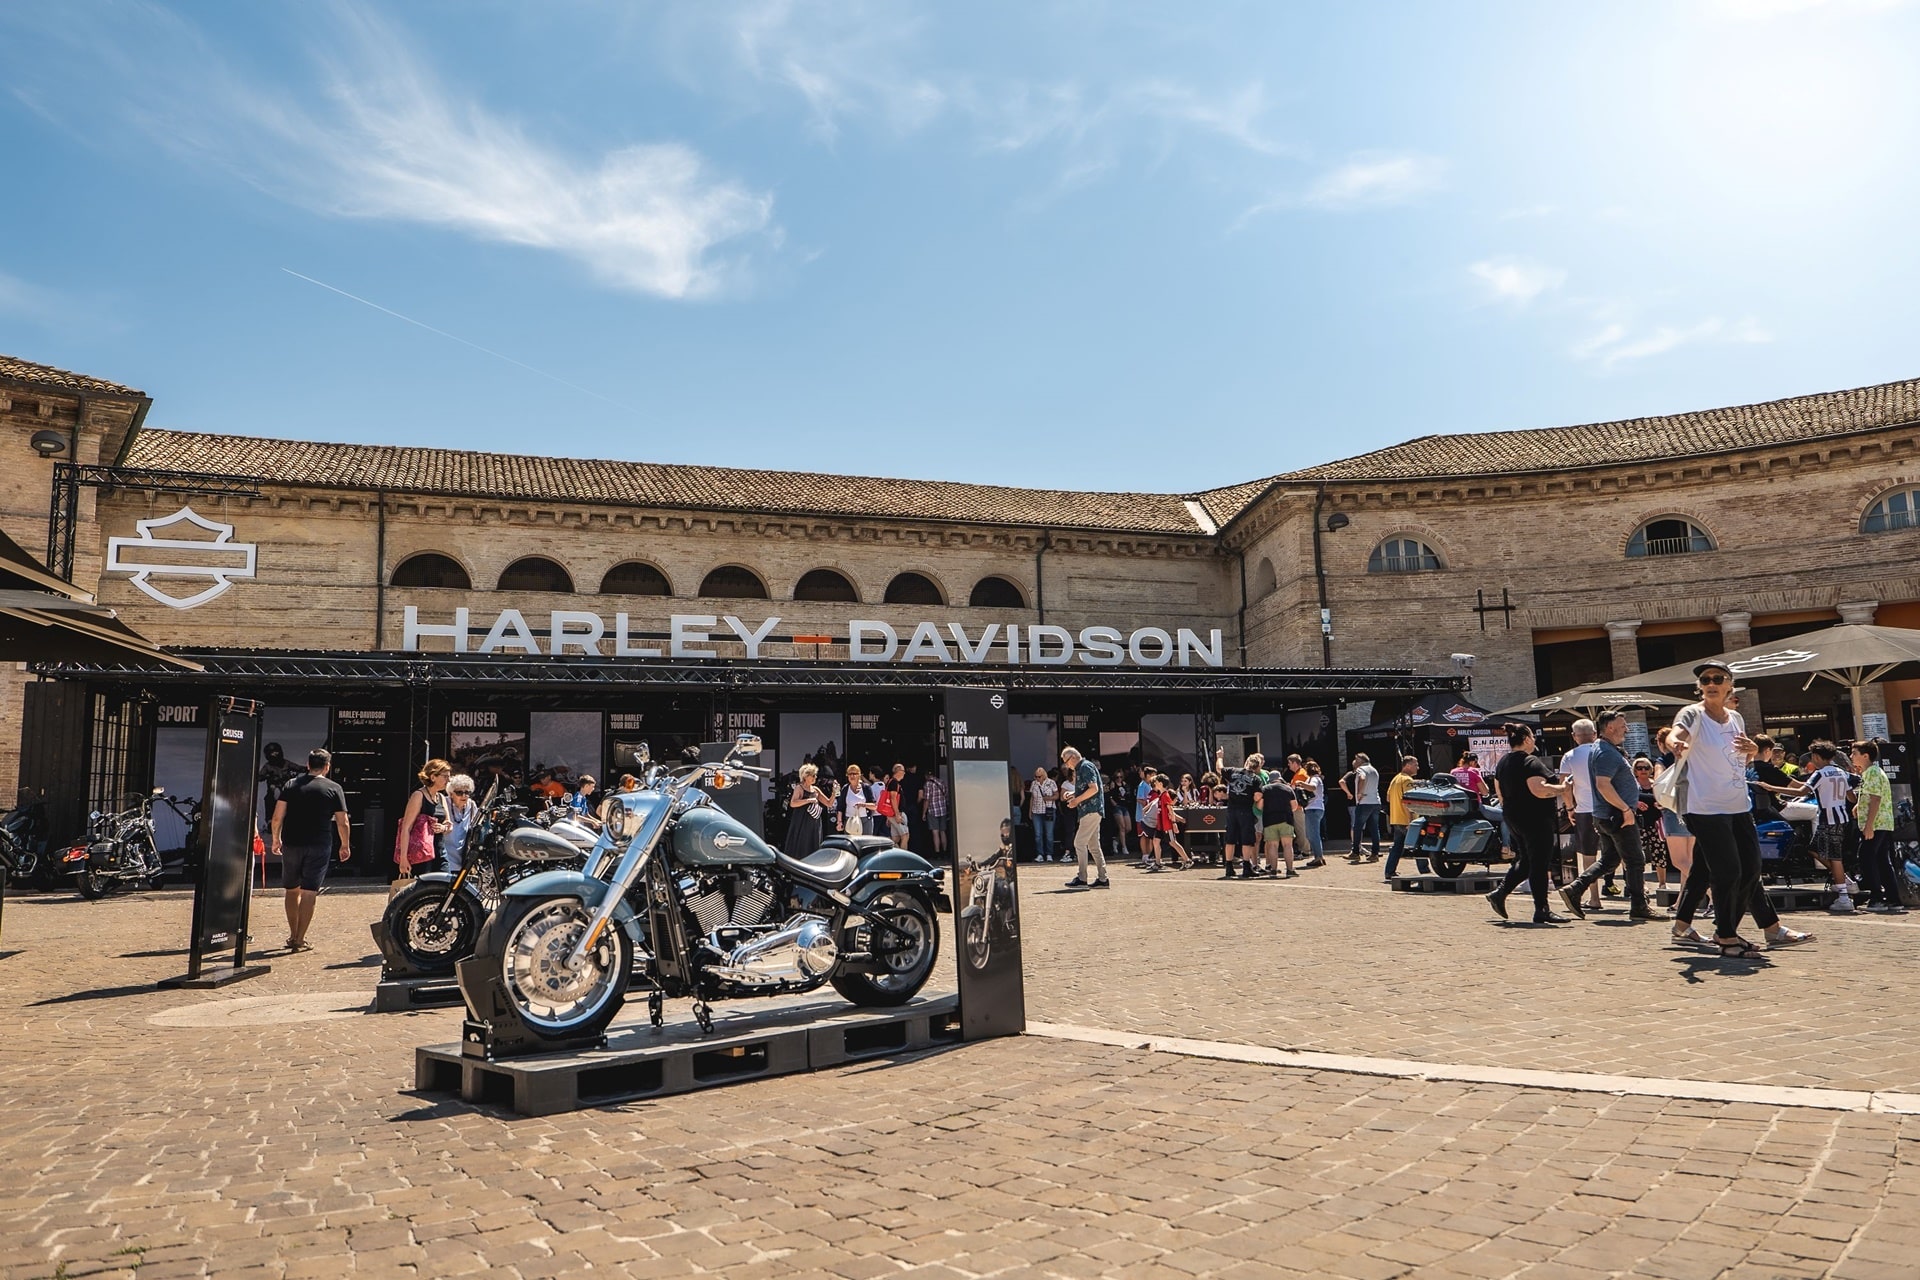 El Rally Europeo Harley Owners Group acoge a más de 100.000 aficionados en su 30ª edición